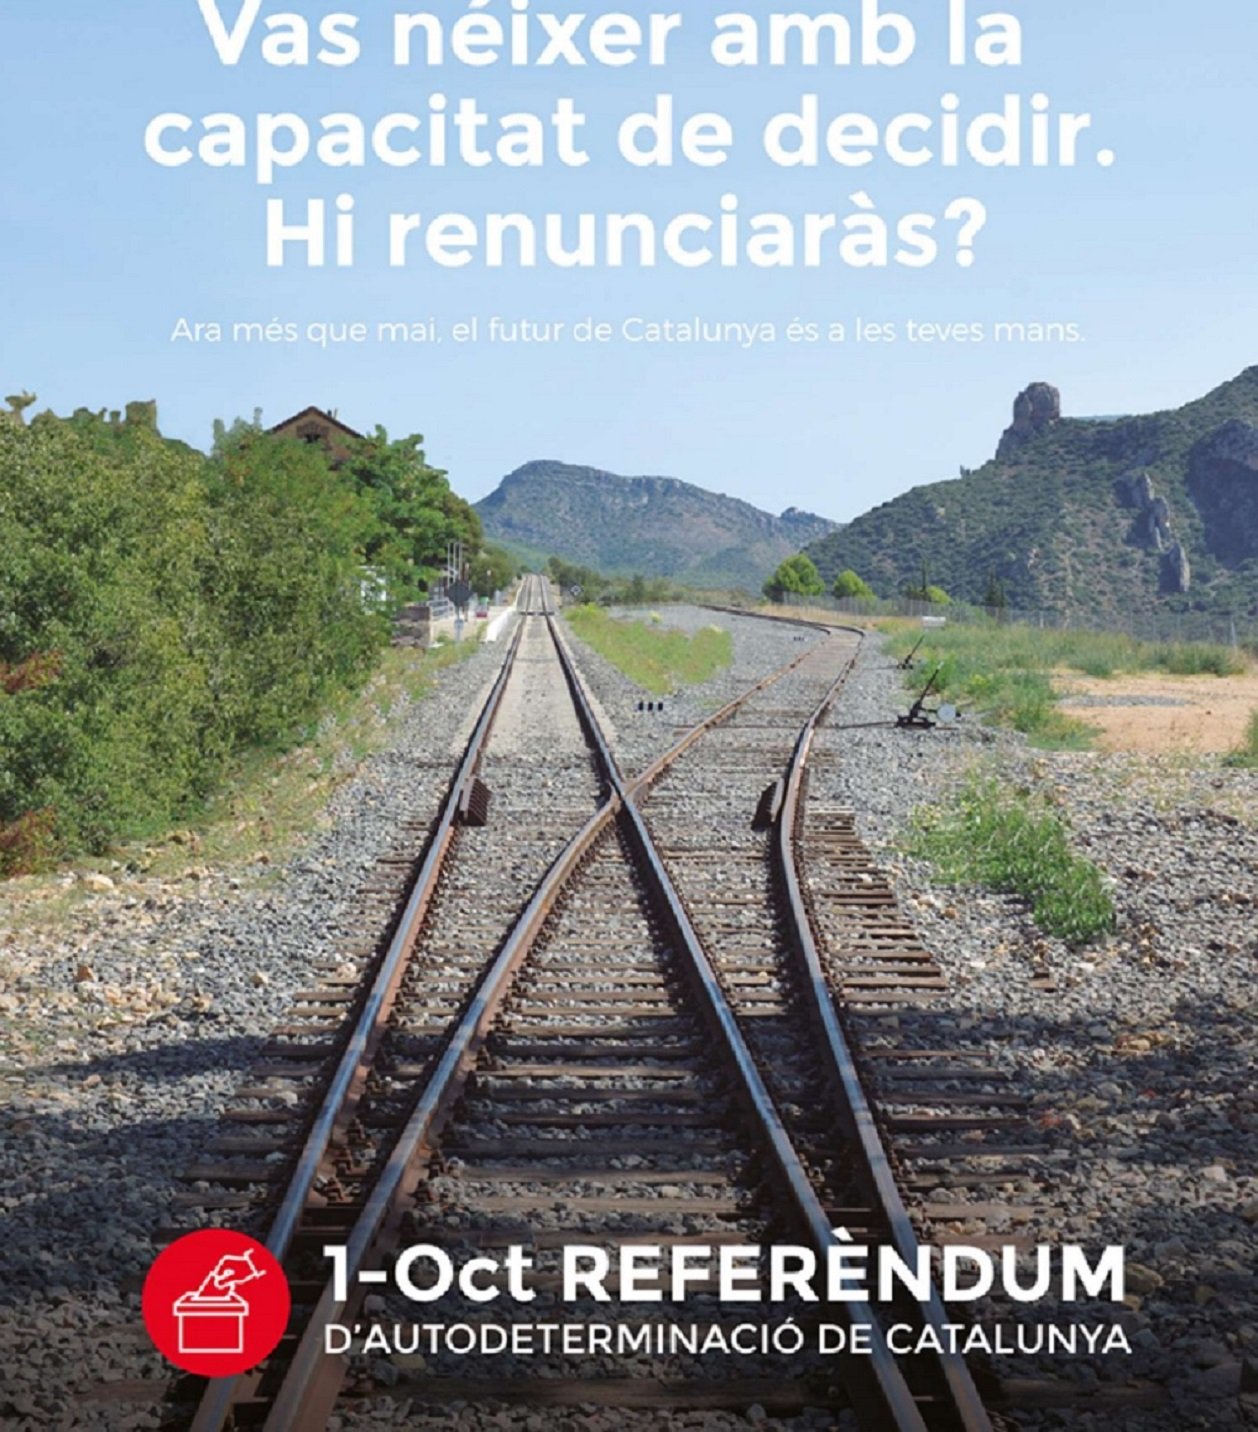 El Govern cuelga en la web del referéndum la papeleta y el anuncio del 1-O